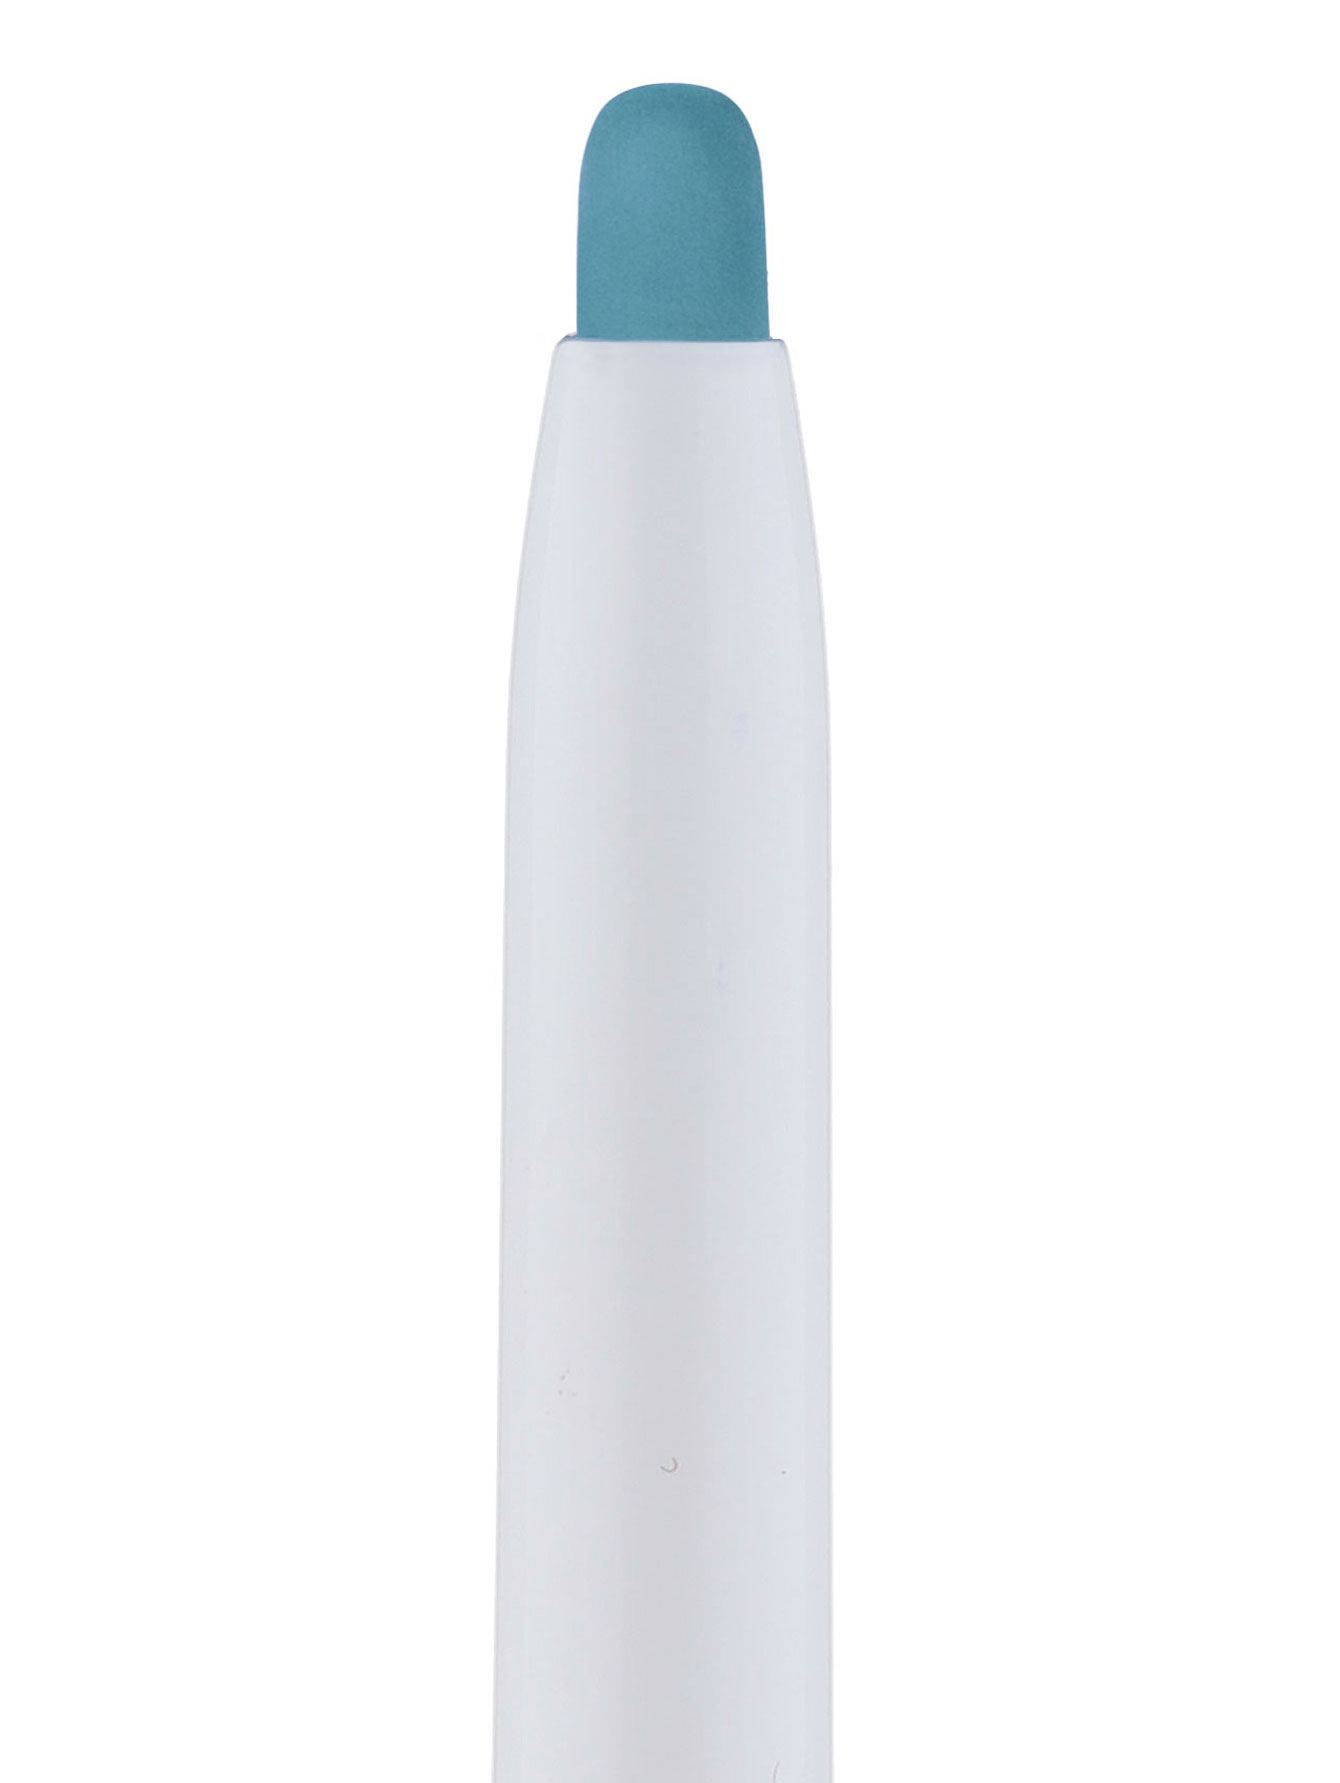  Водостойкий карандаш для глаз - Бирюзовый, Khol Couture - Общий вид